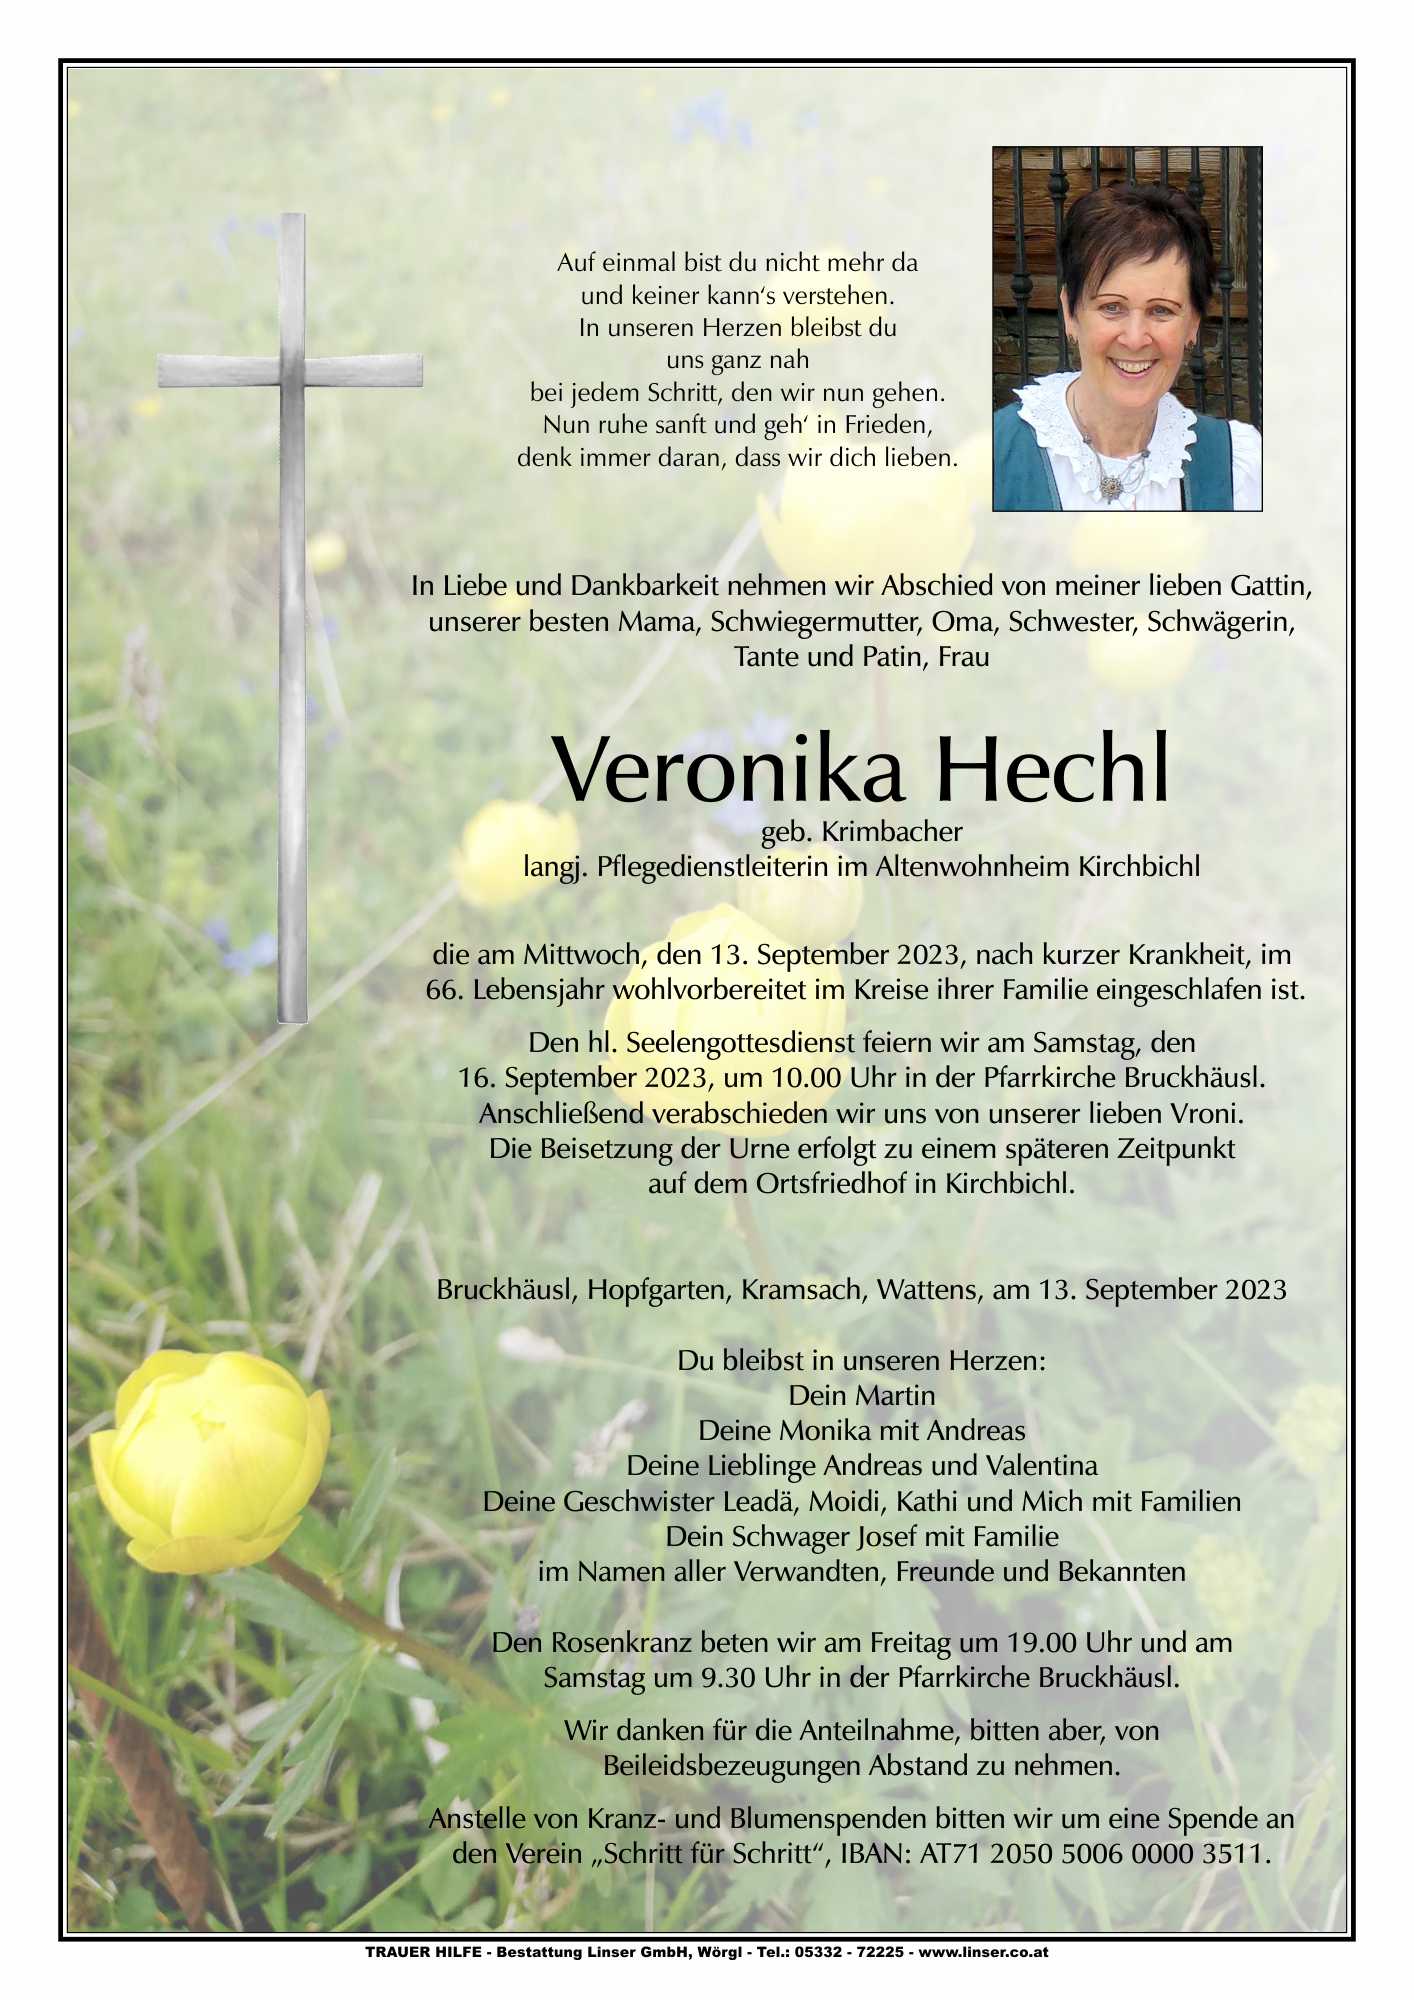 Veronika Hechl